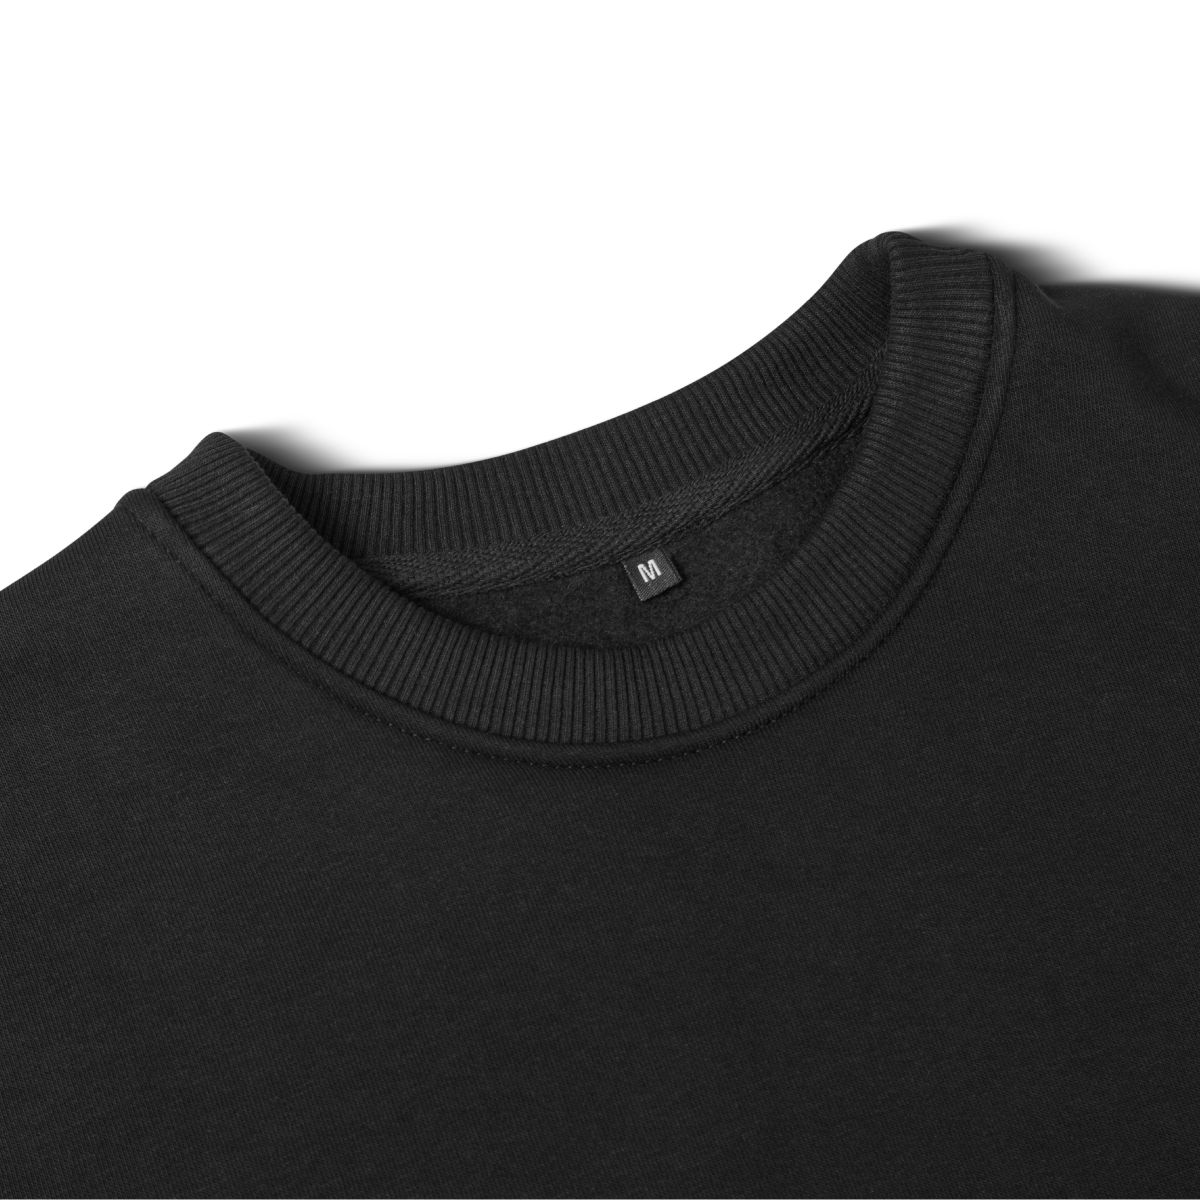 Свитшот Base Soft Sweatshirt. Свободный стиль. Цвет Черный/Black 7